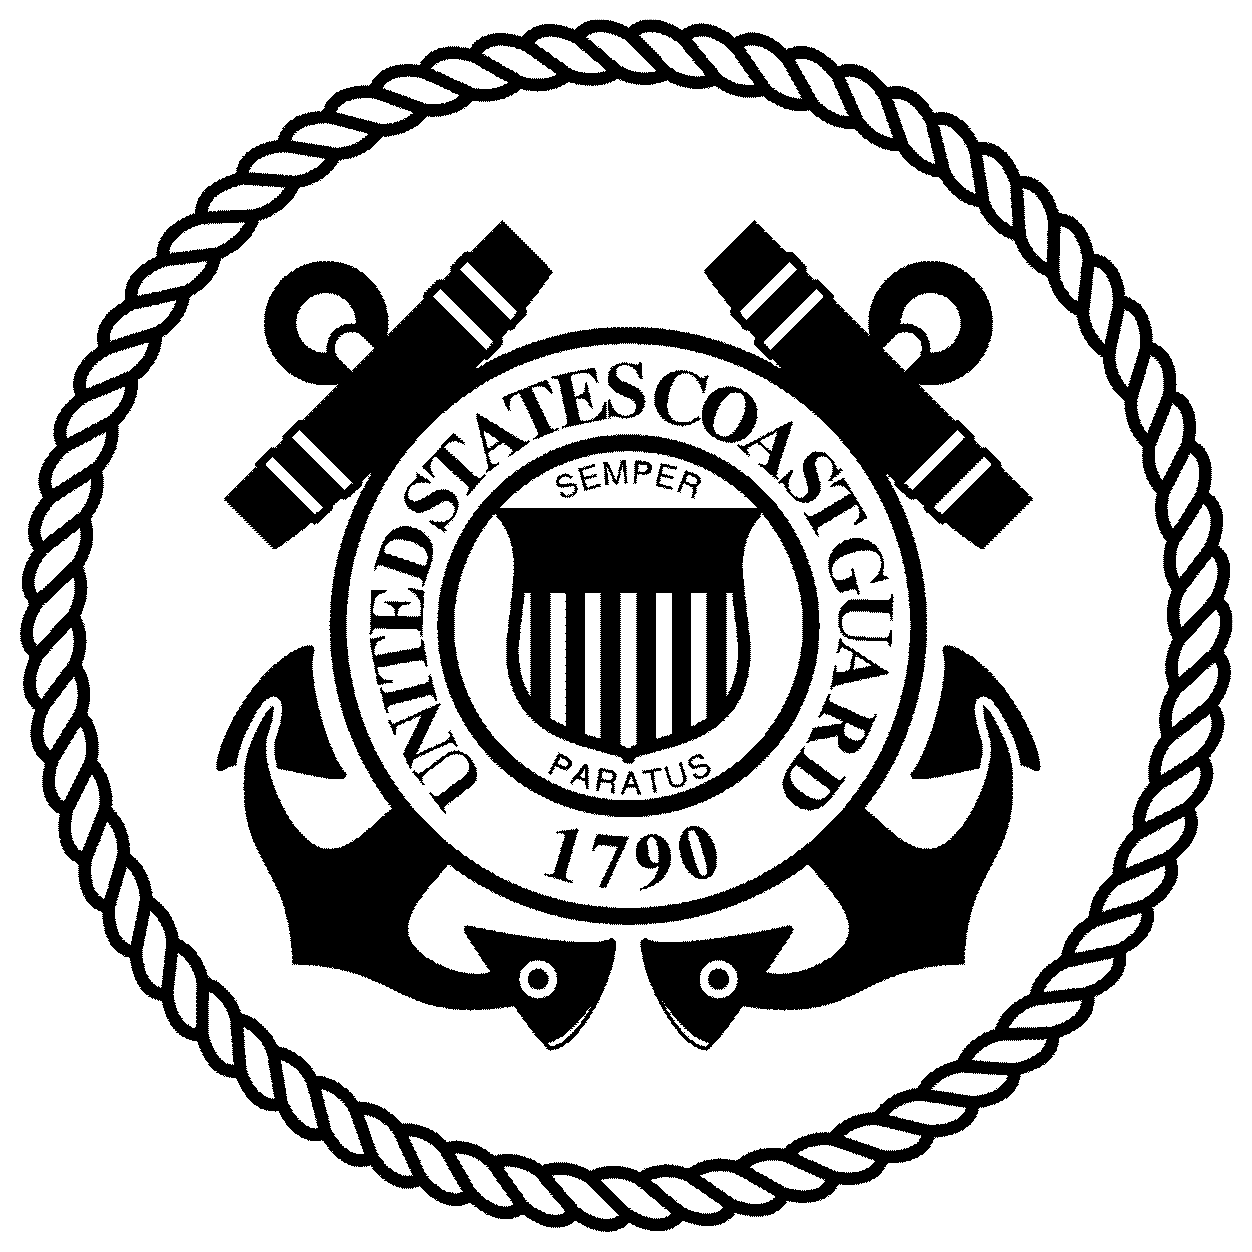 us-coast-guard-logo-vector-at-vectorified-collection-of-us-coast